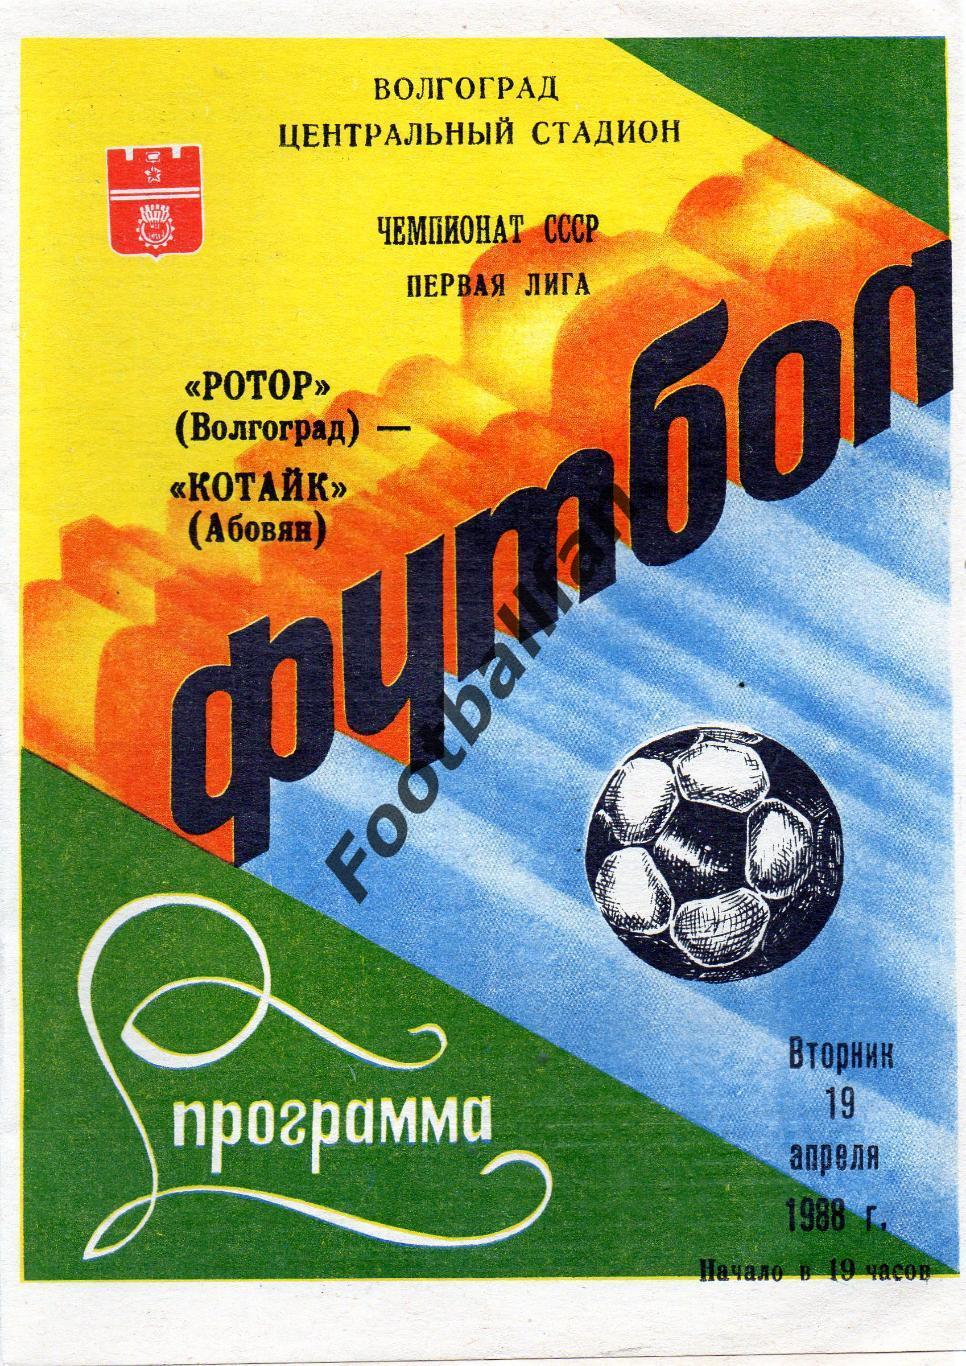 Ротор Волгоград - Котайк Абовян 19.04.1988